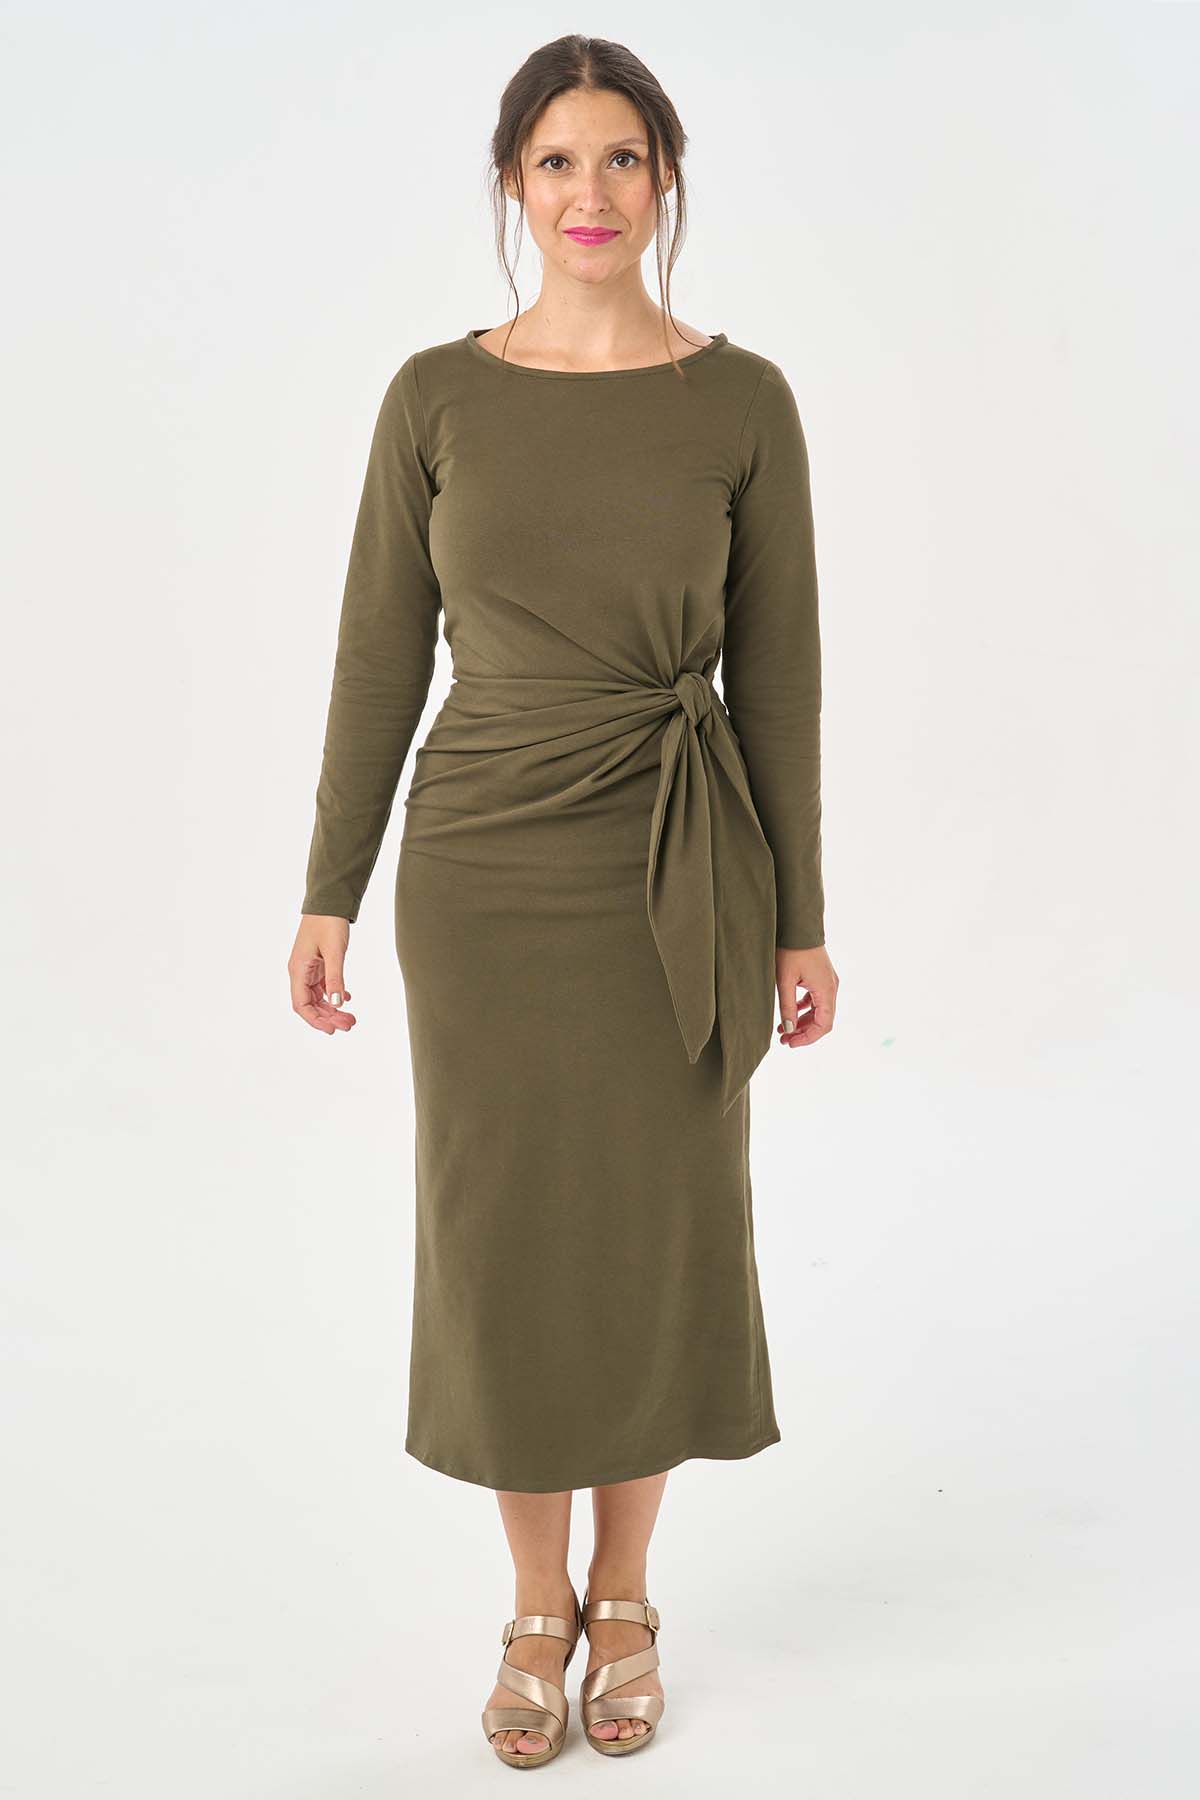 Estelle Dress - Tie-detail Knit Dress PDF Sewing Pattern - Sew Over It